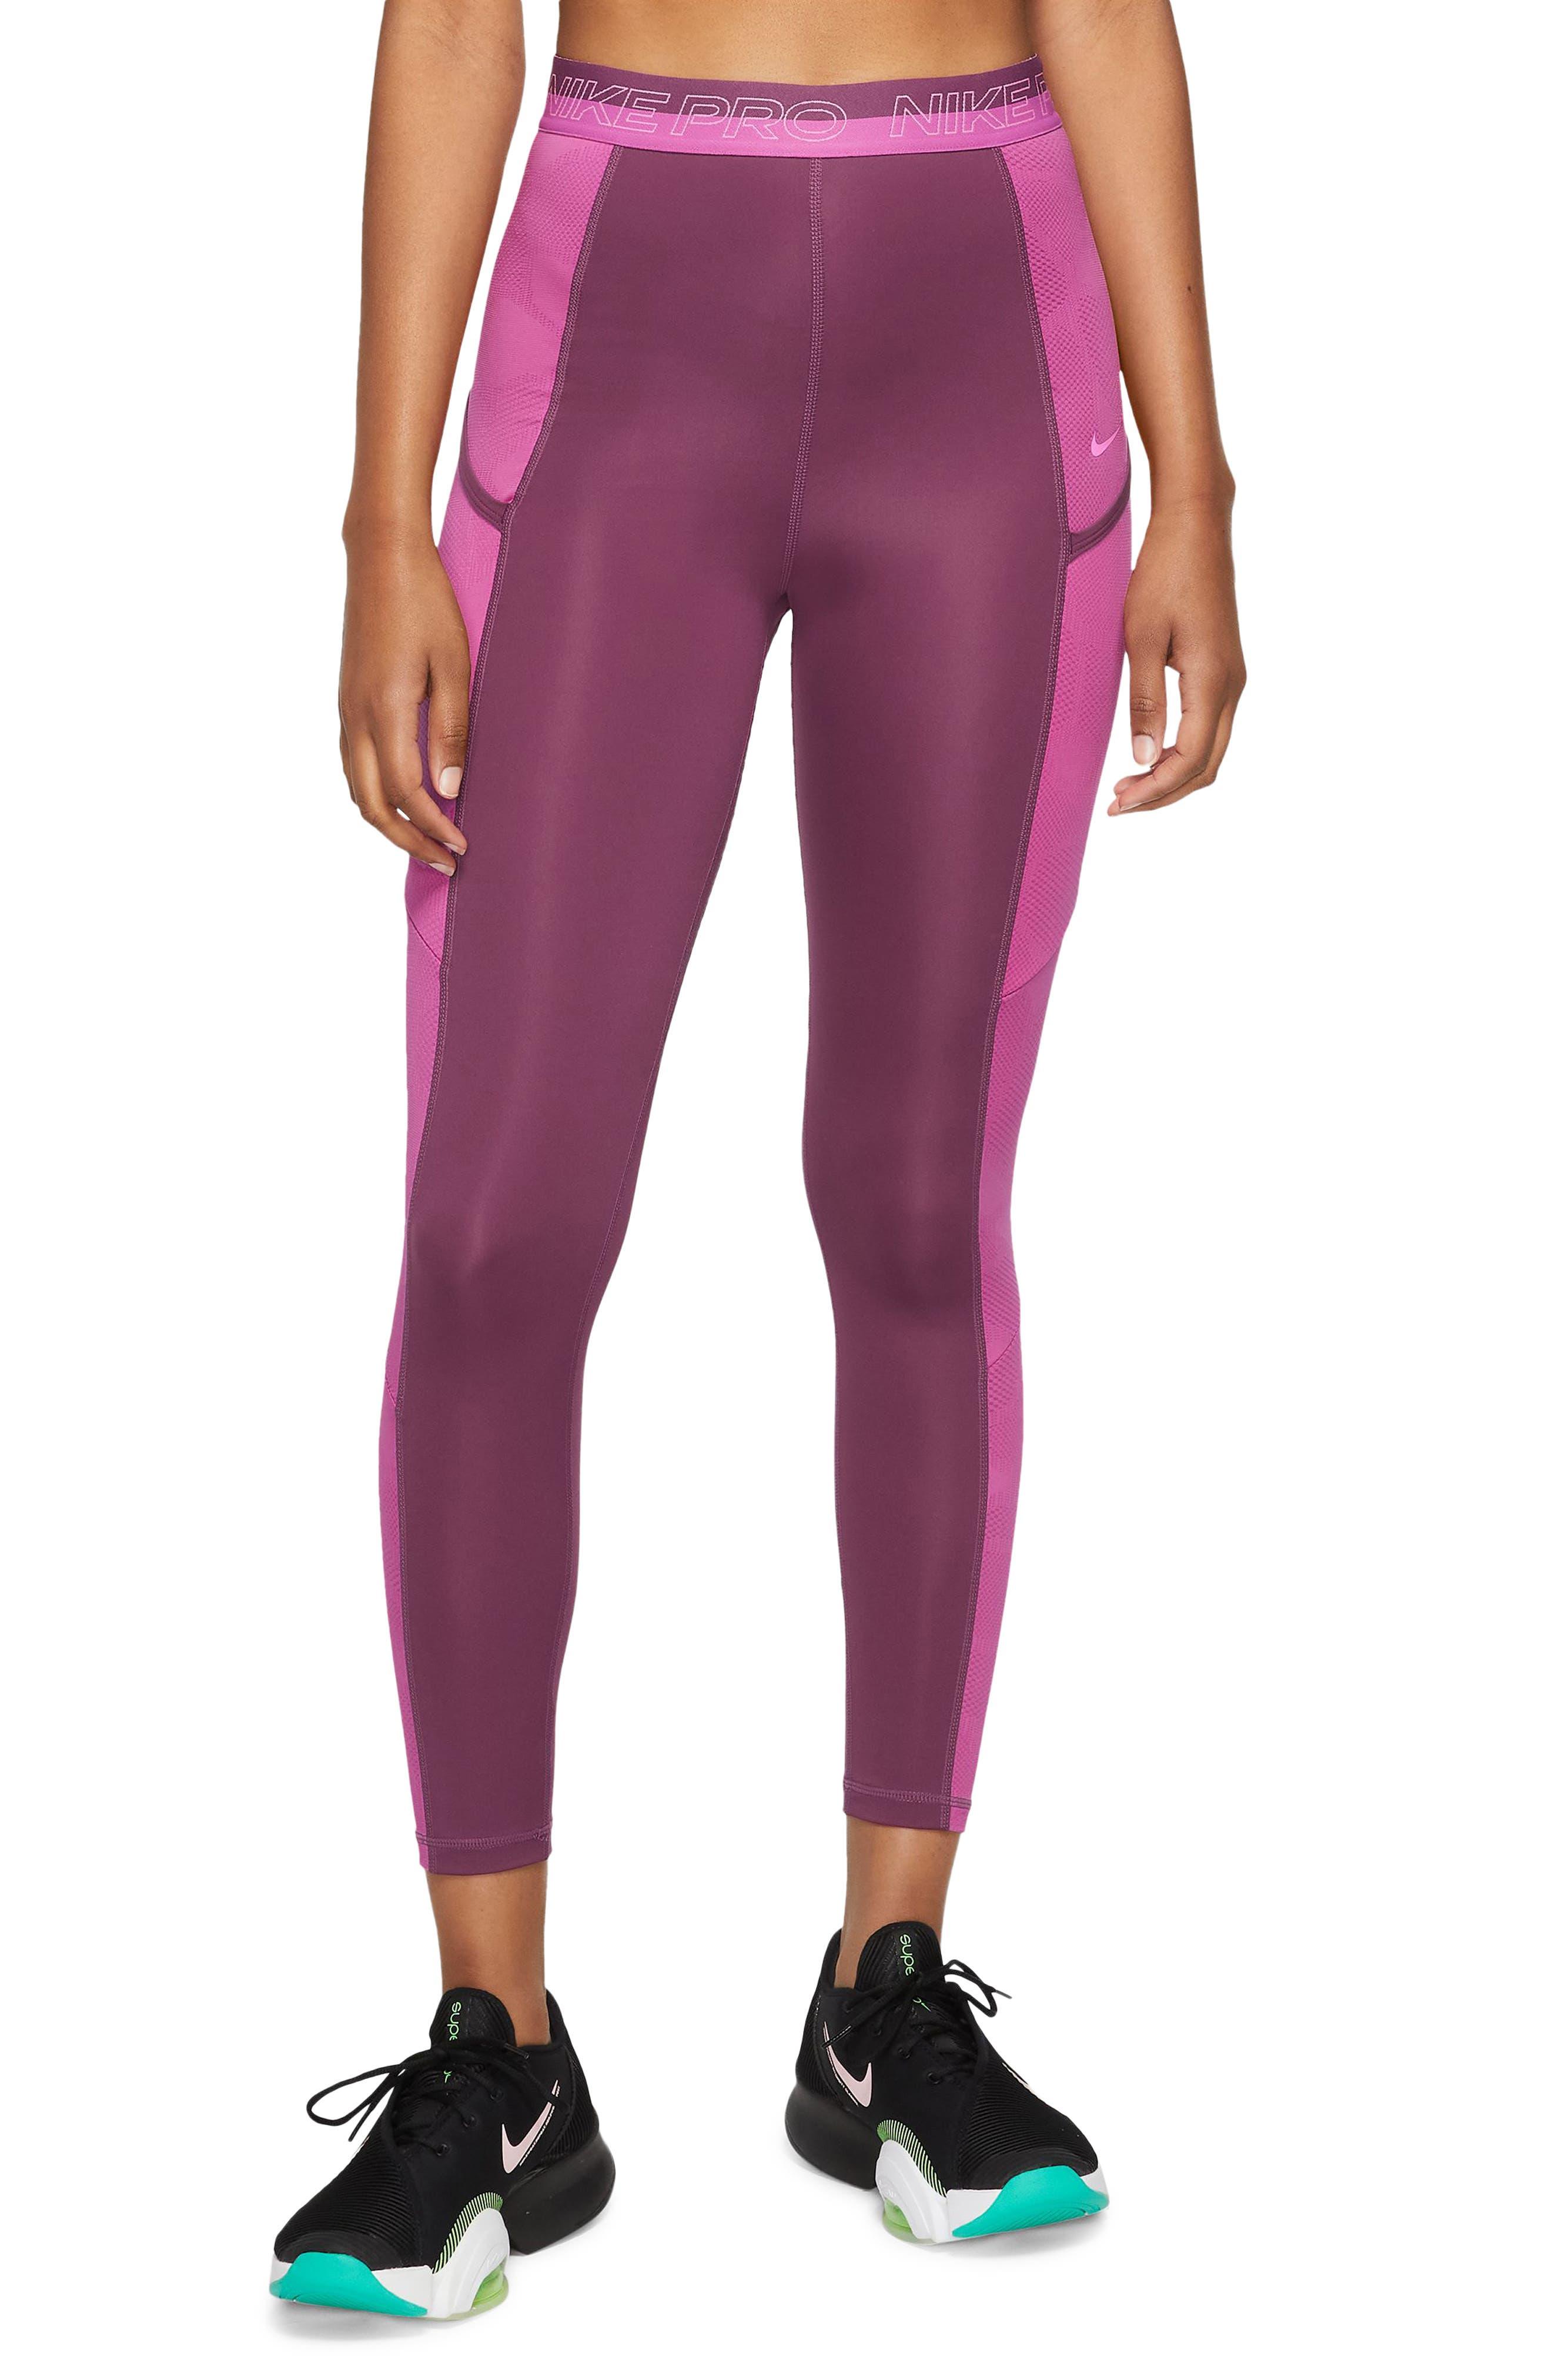 gras spion lavendel Nike Pro High Rise 7/8 leggings in Red | Lyst